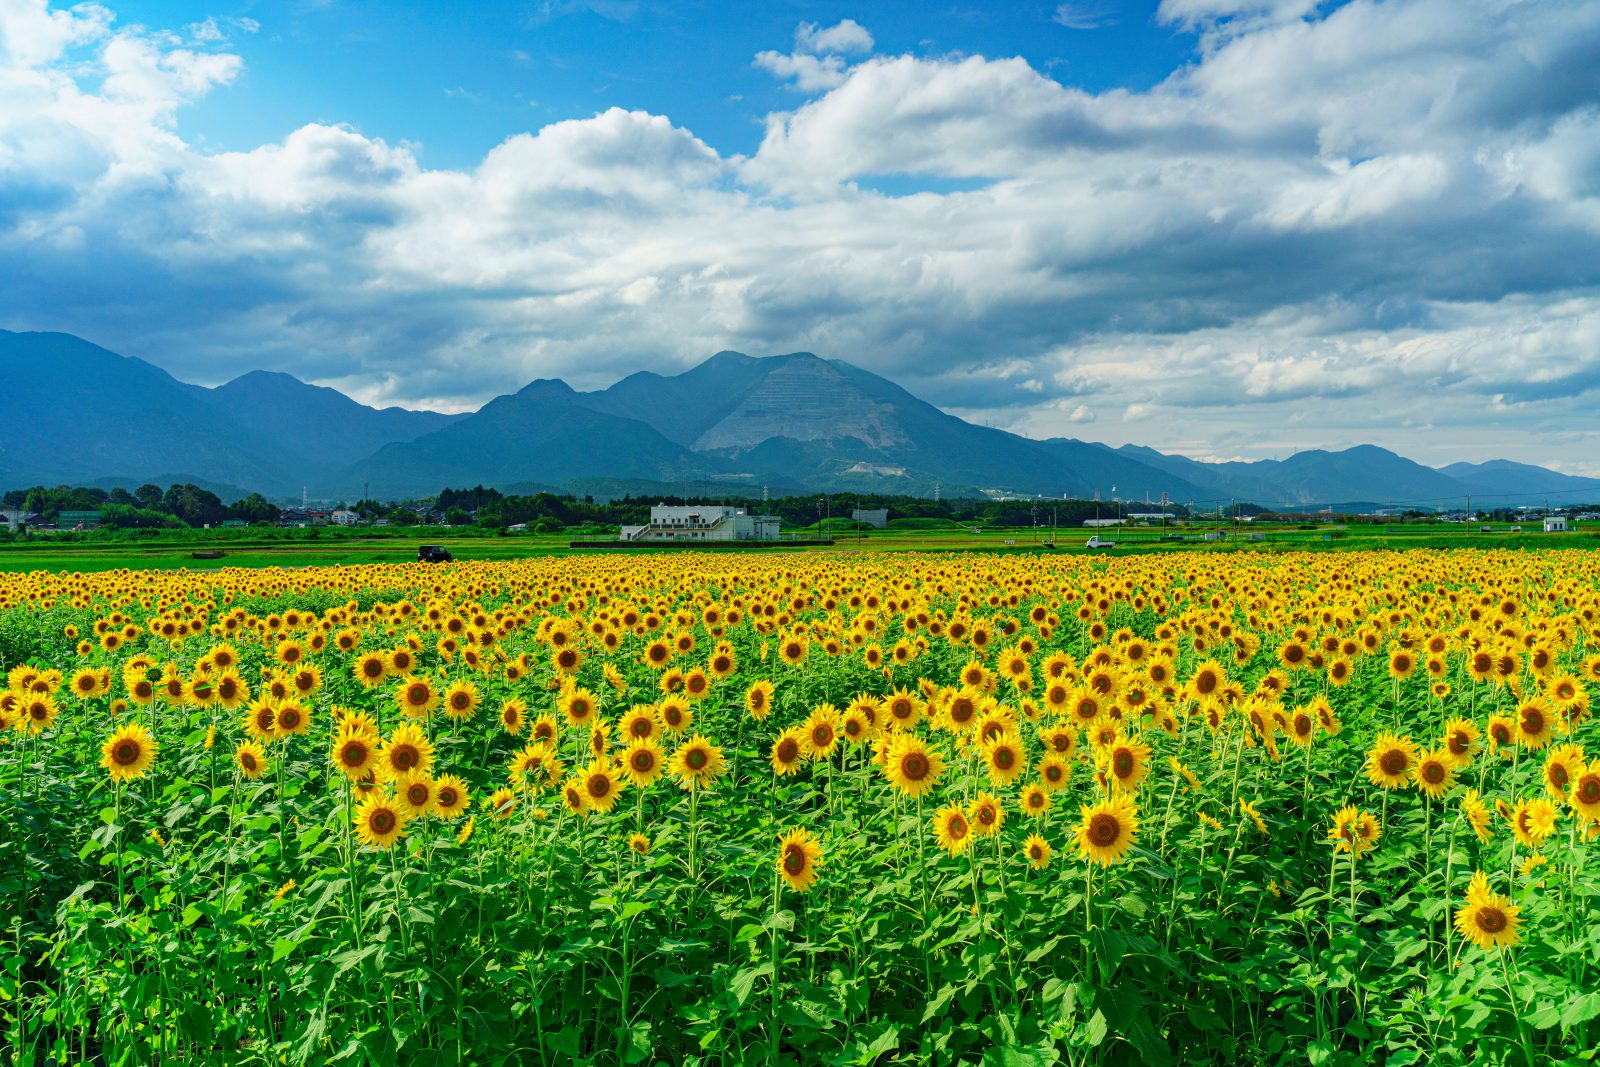 上笠田のひまわり畑の写真「藤原岳とひまわり畑」